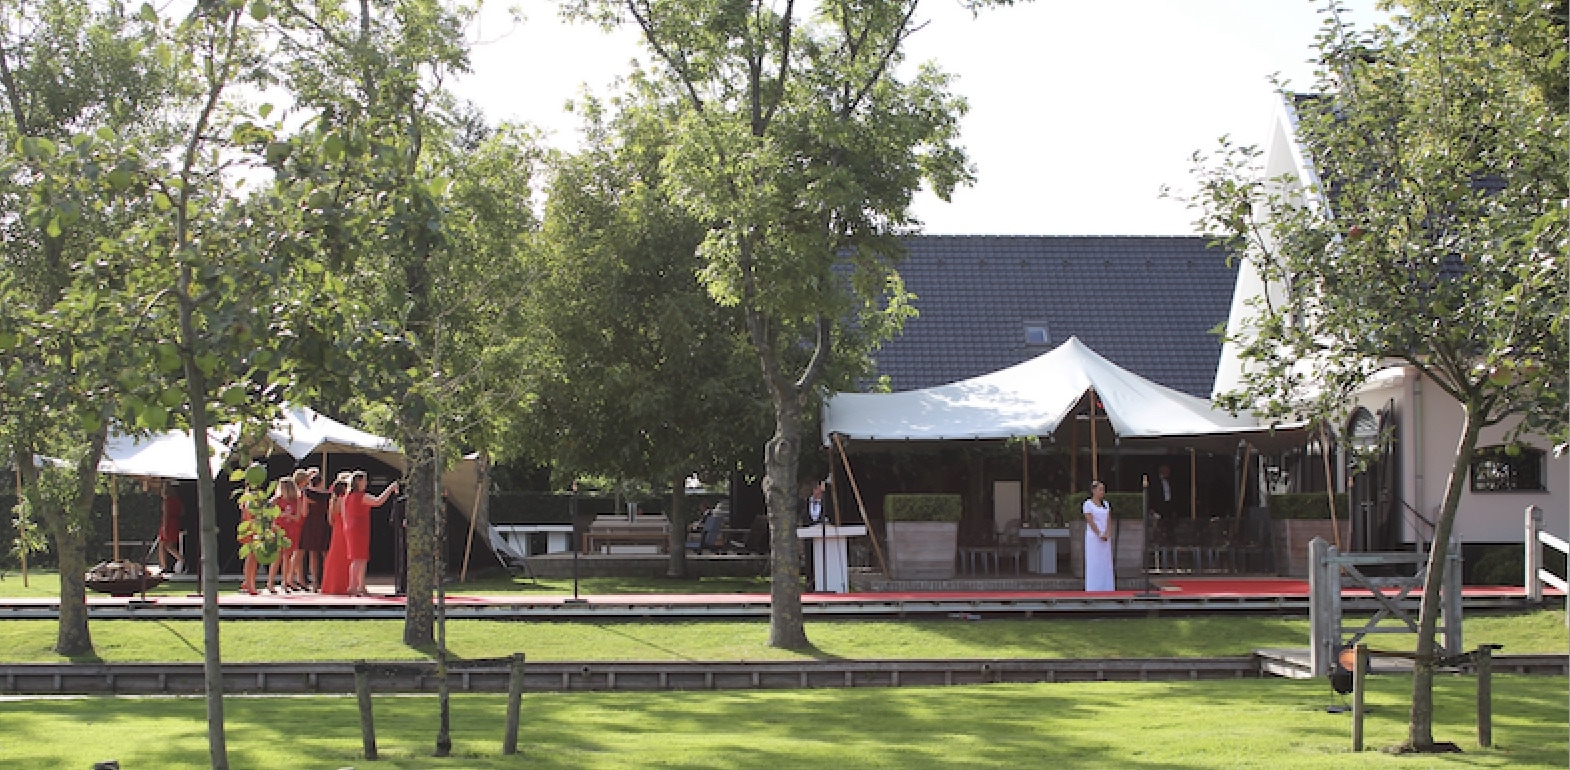 Trauung und Hochzeit im Stretchzelt - eine ideale Hochzeitslocation im Sommer bieten Stretchzelte im eigenen Garten - Zeltverleih Intertent